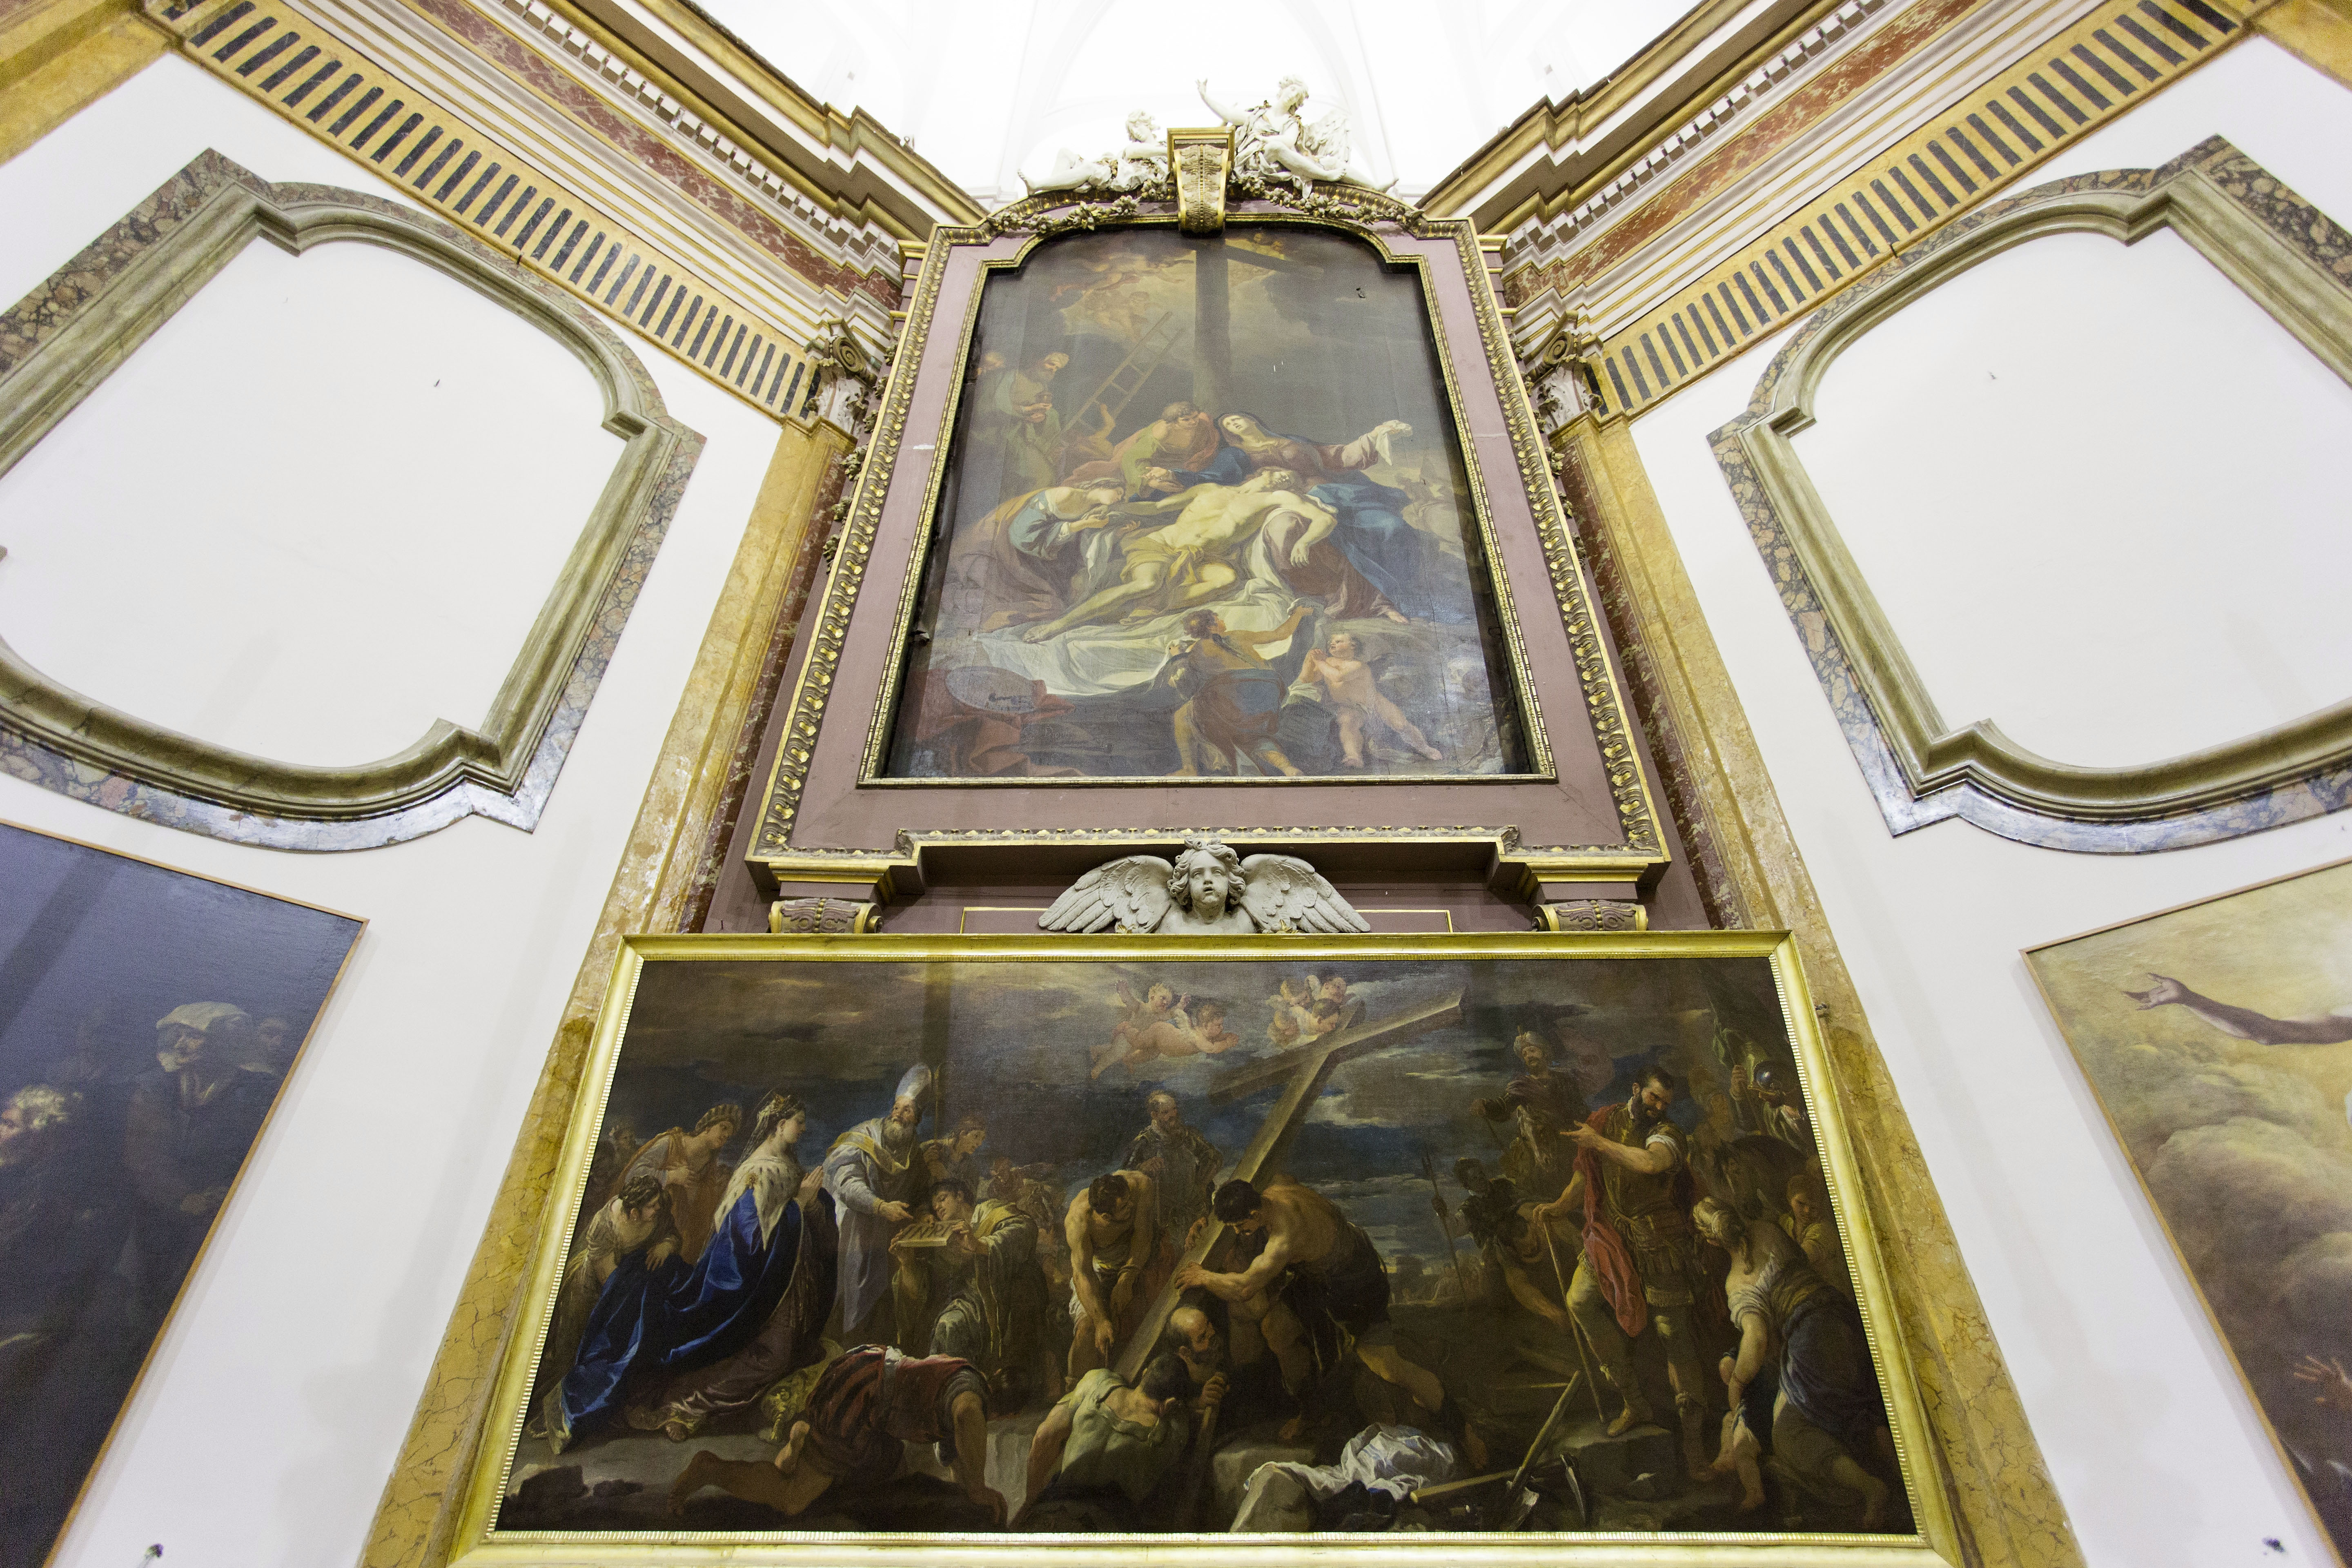  “Musica nei Luoghi Sacri” quattro concerti di musica classica nelle chiese monumentali di Napoli